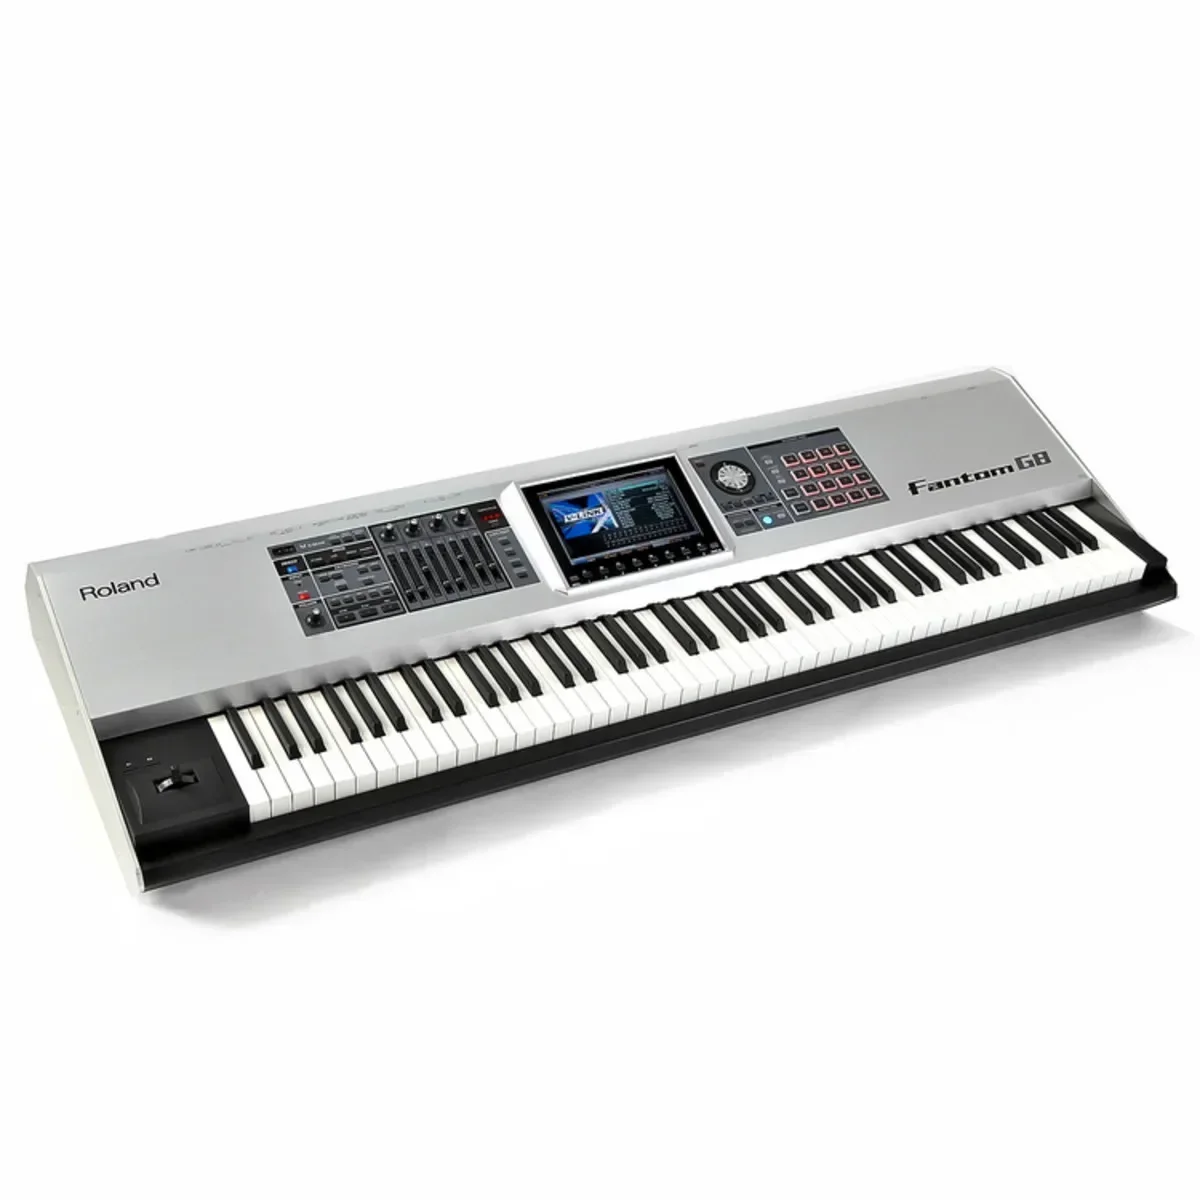 VENDAS de VERÃO de DESCONTO SOBRE a Melhor Qualidade de Roland Fantom G8-88 teclas do teclado workstation